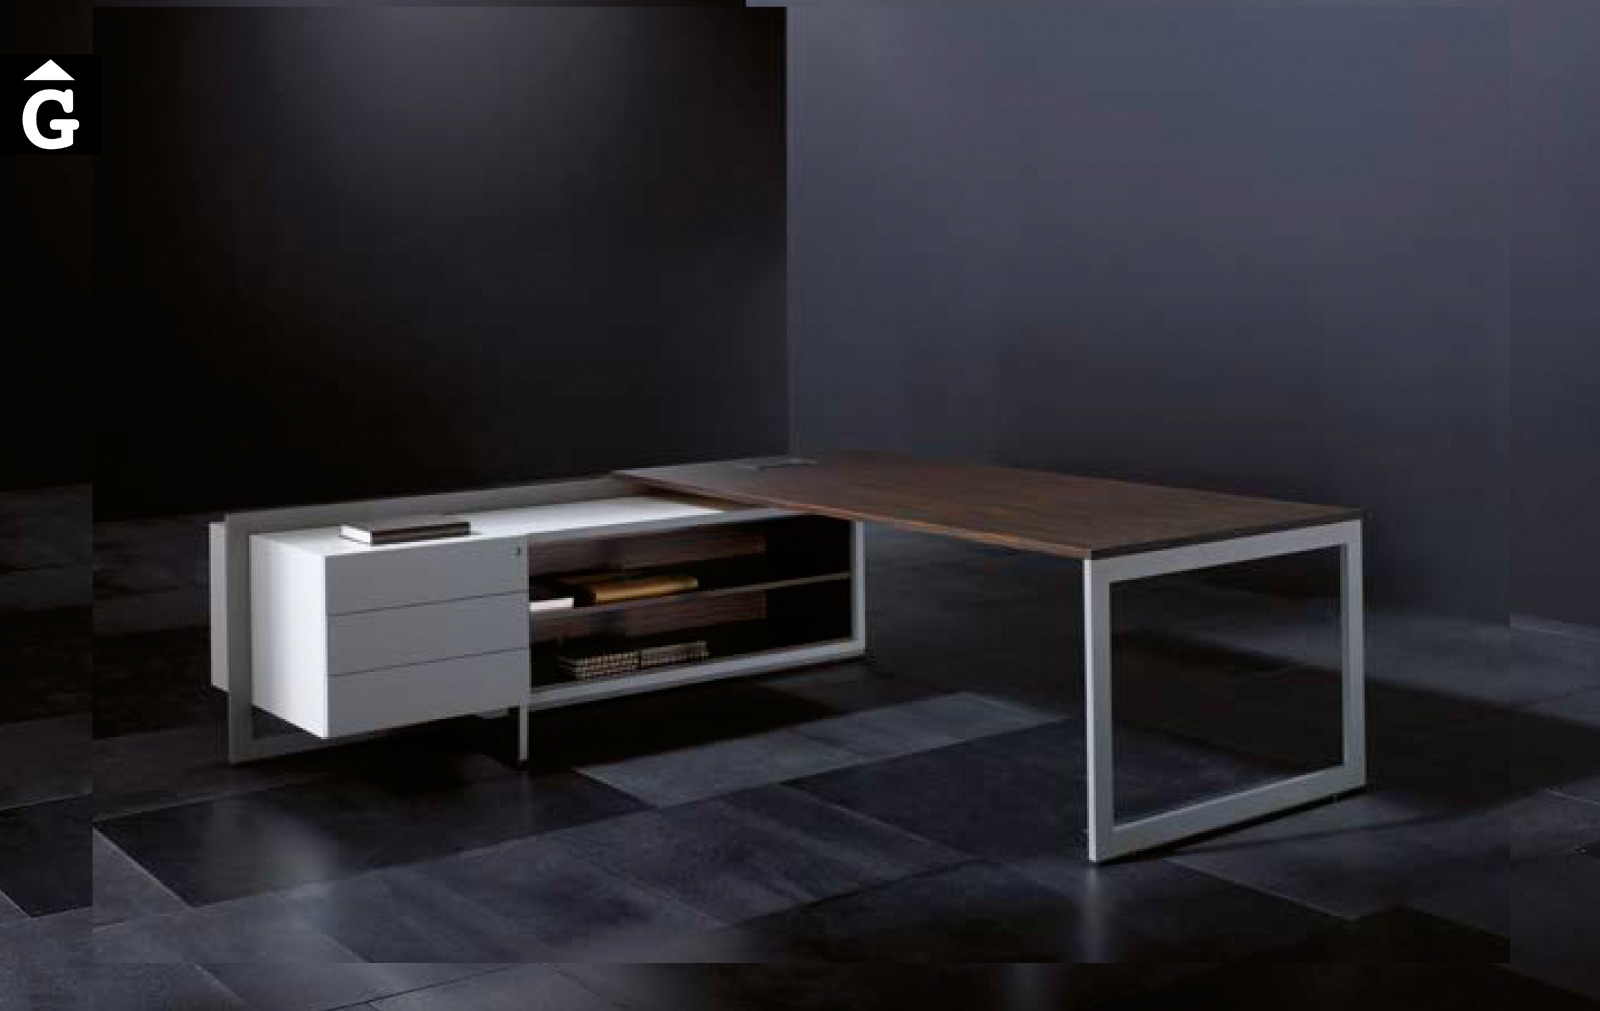 Taula despatx Vektor disseny Josep Lluscà | Forma 5 | mobiliari d’oficina molt interessant | mobles Gifreu | botiga | Contract | Mobles nous d’oficina